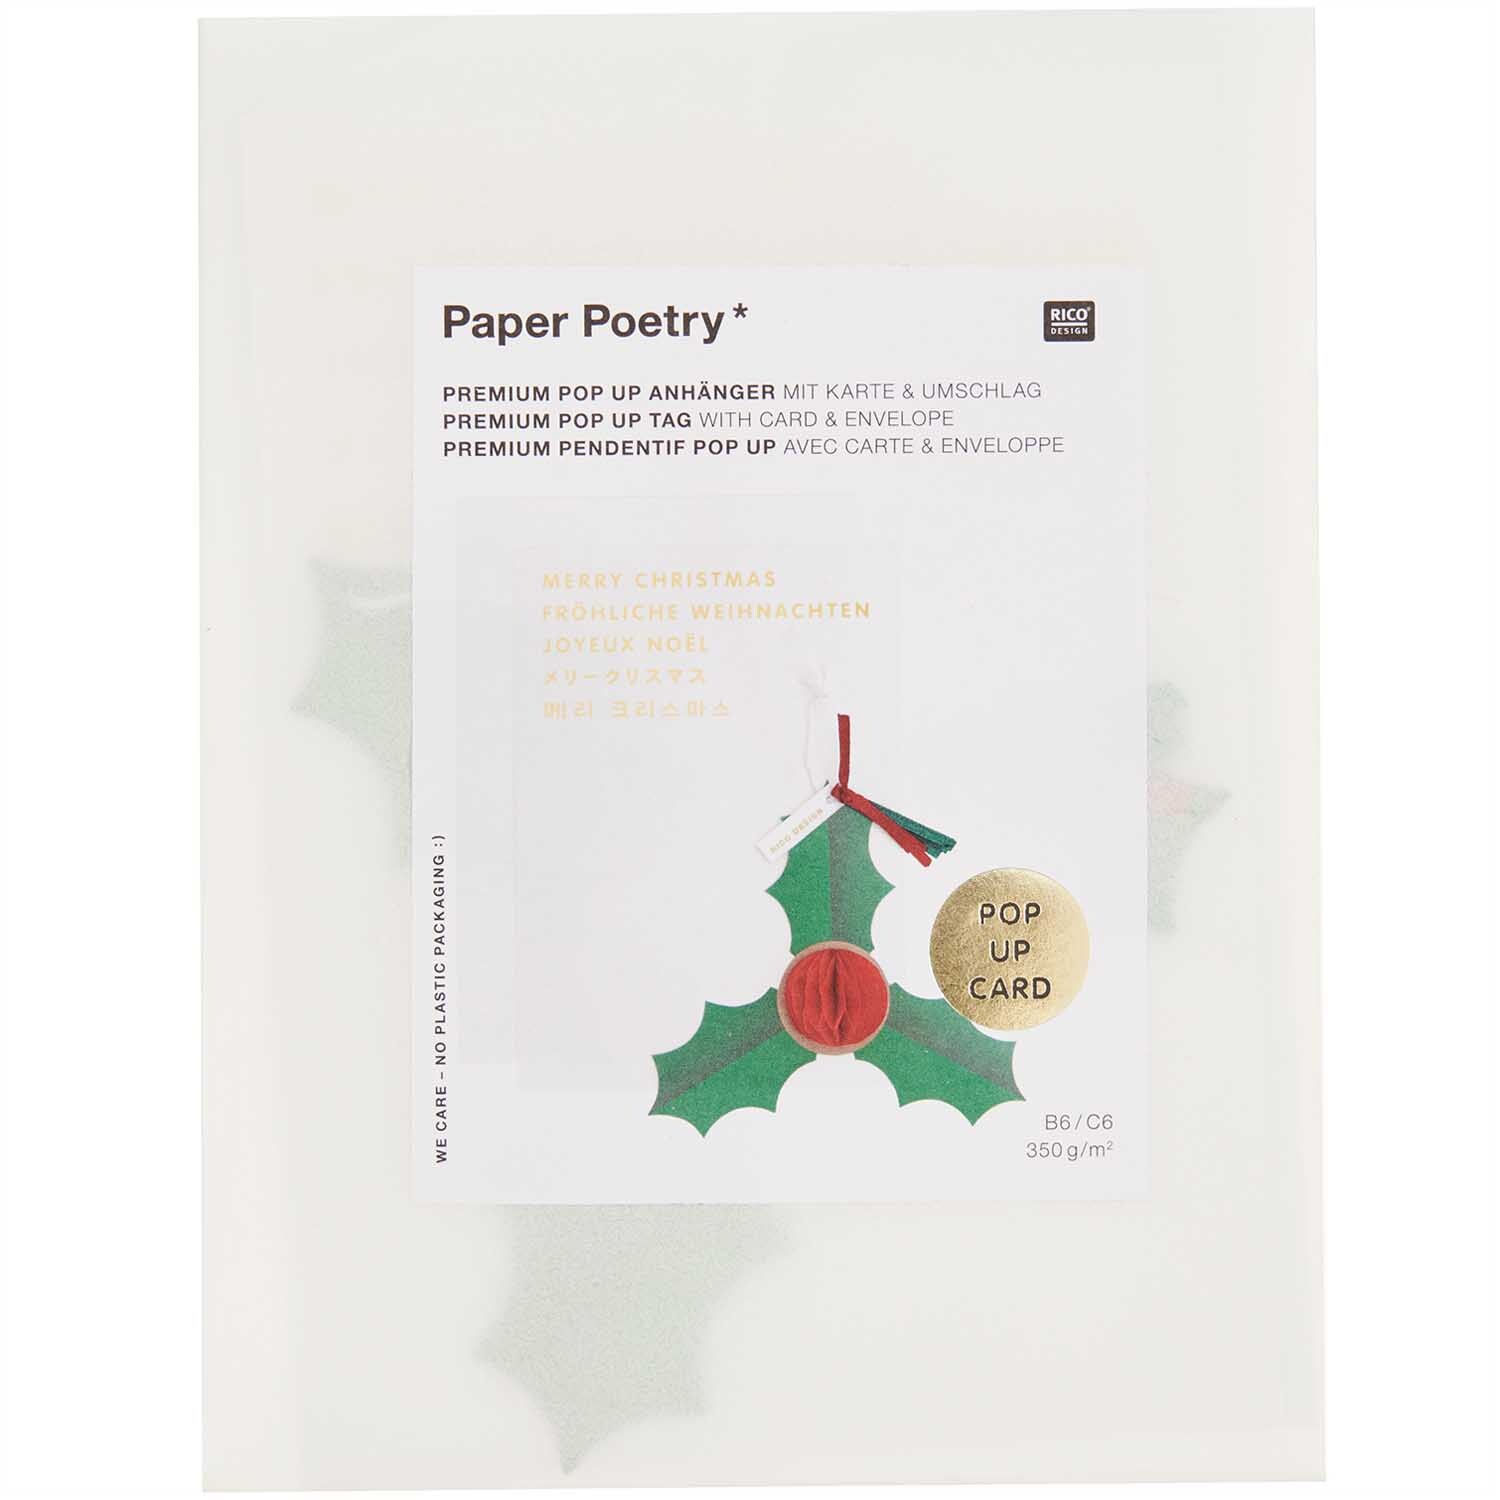 Paper Poetry Kartenset mit Pop-Up Anhänger Ilex B6